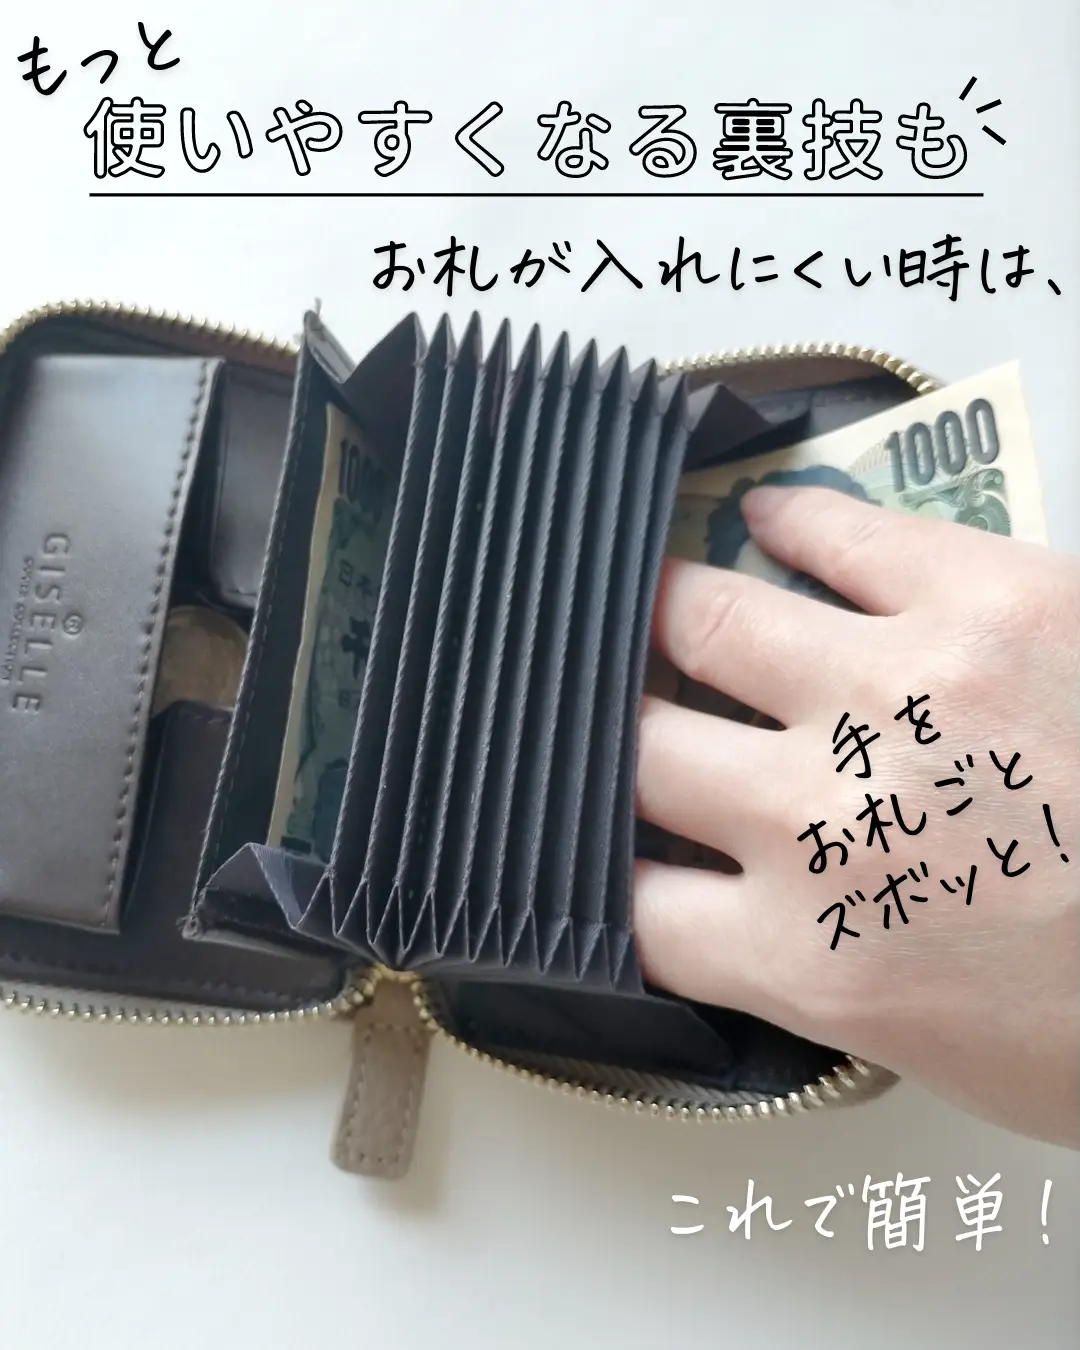 【バズるの納得】1番売れてるミニ財布👛本当の楽天1位はこれ！の画像 (6枚目)